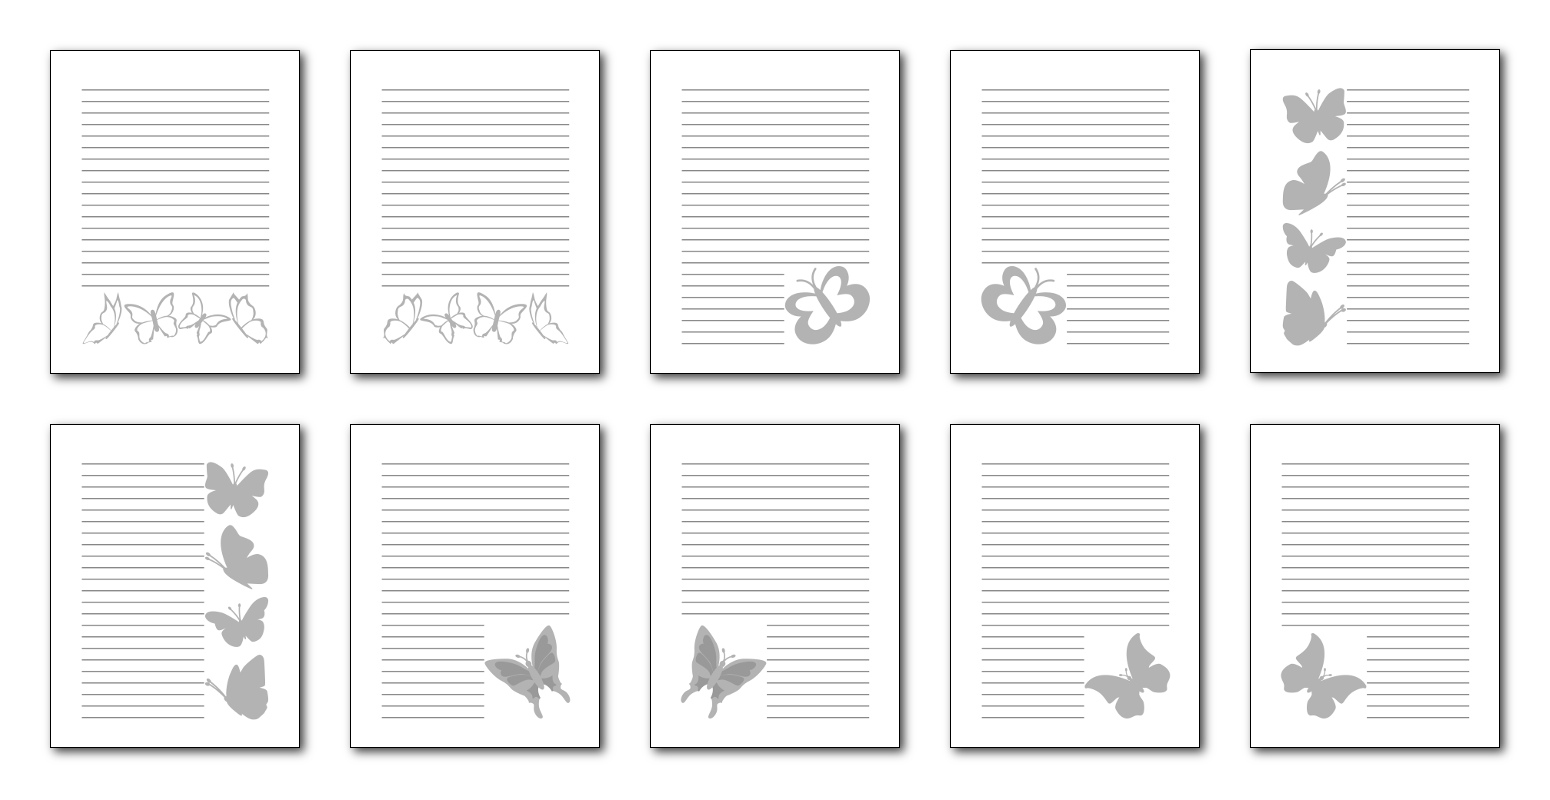 Zen PLR Beautiful Butterflies Journal Templates Upgrade Journal Pages Grayscale Digital